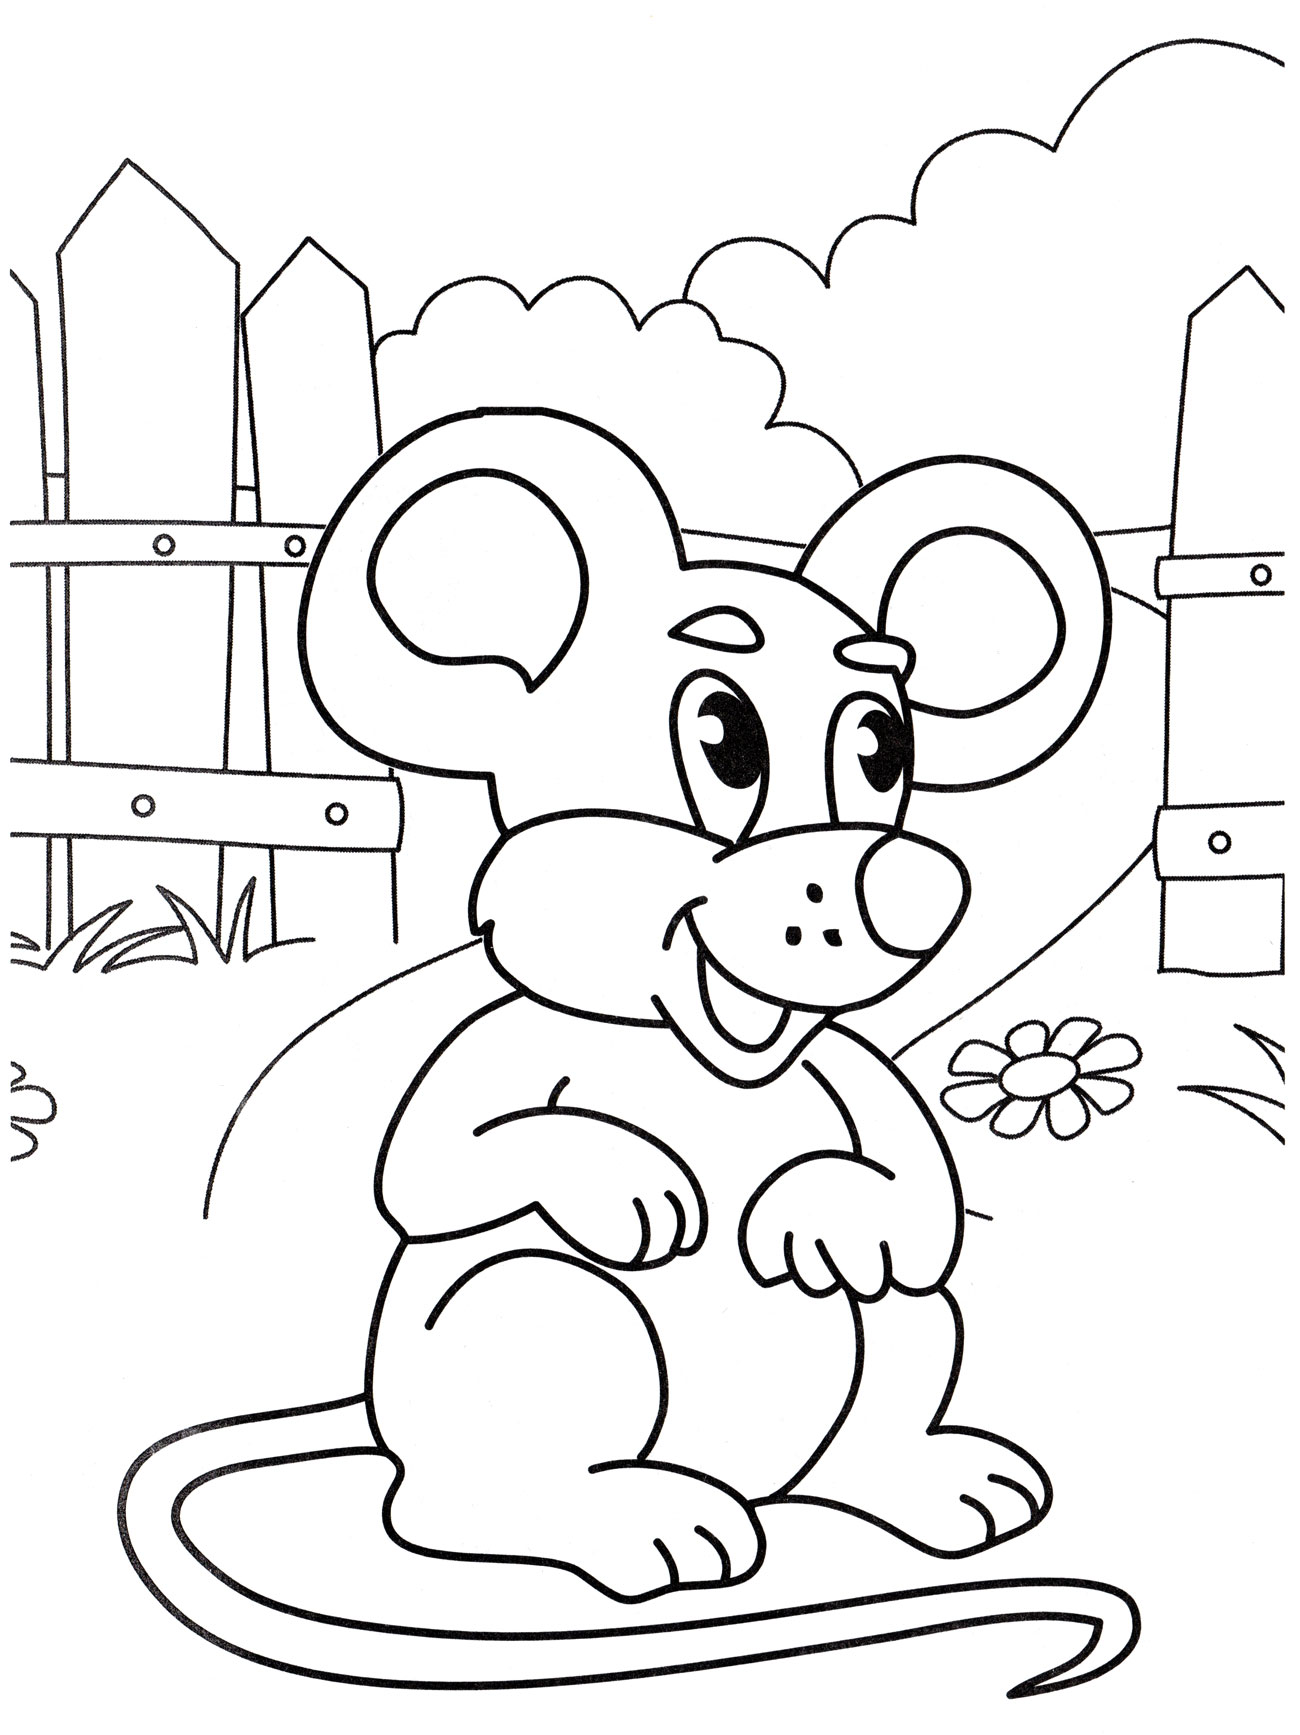 Раскраска Ушастая мышка